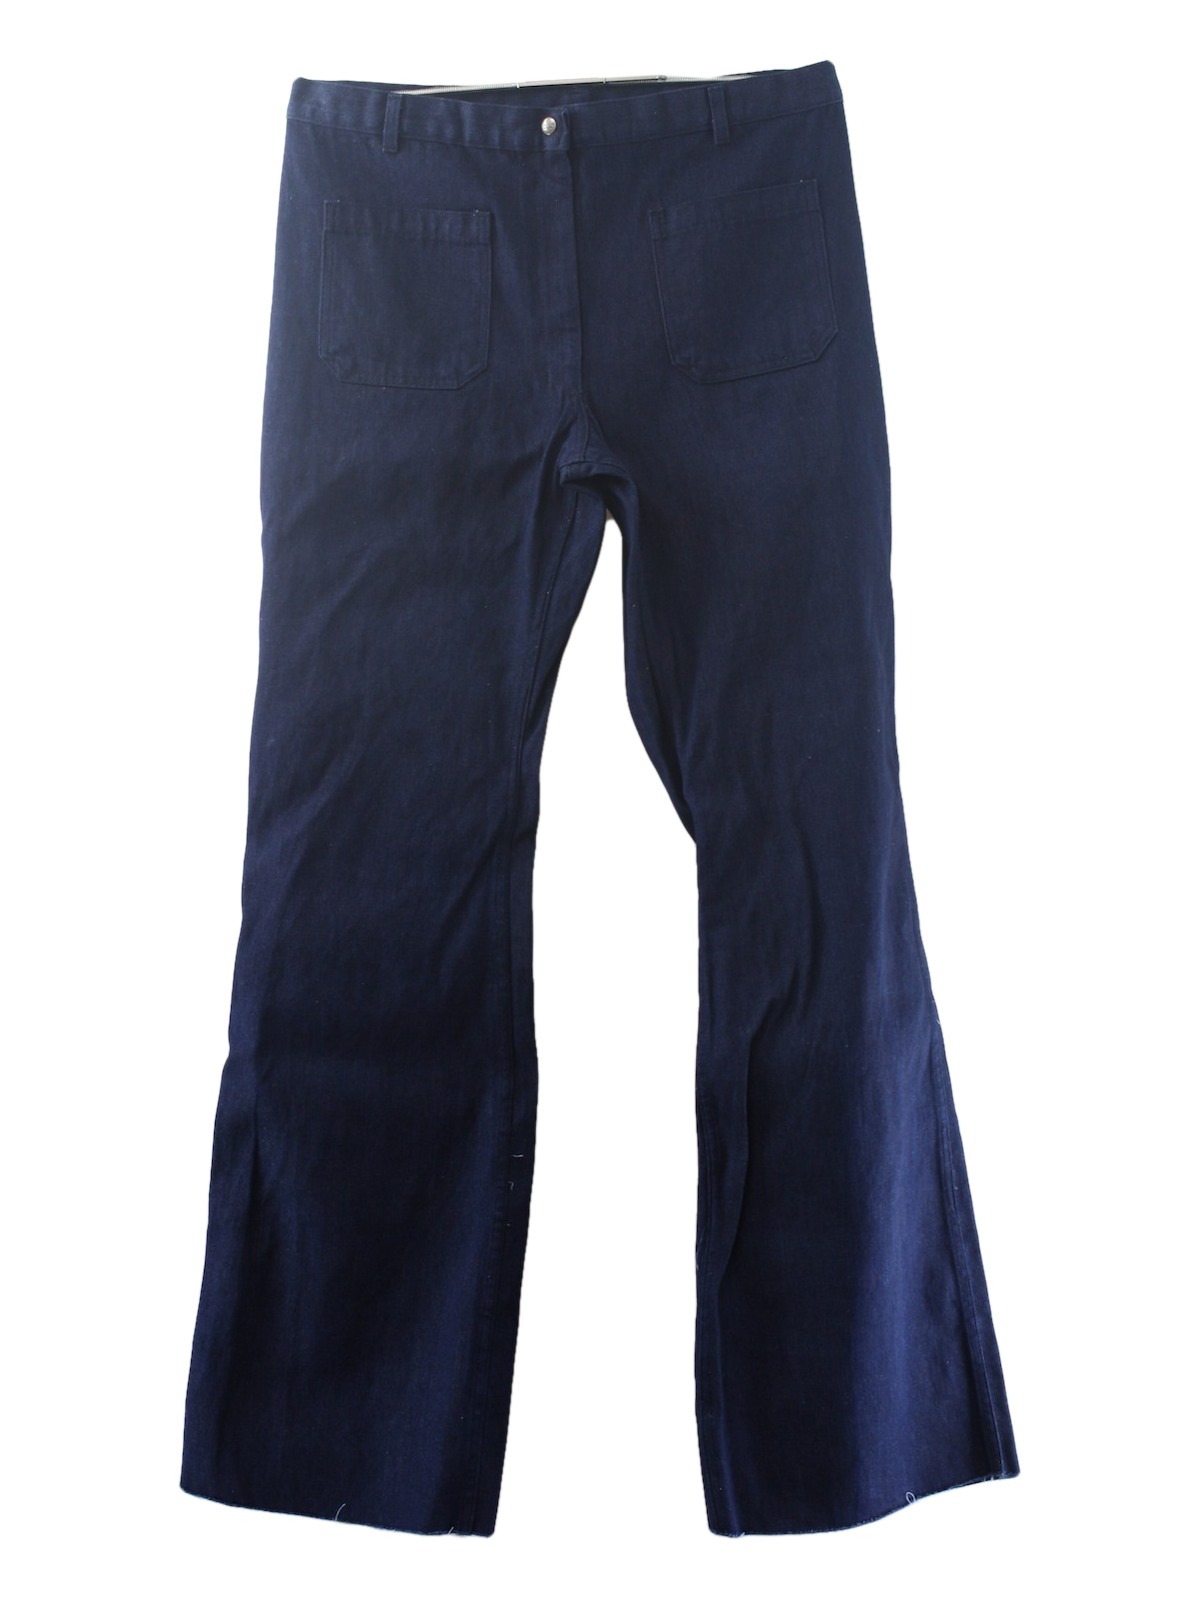 1970's Vintage Seafarer Bellbottom Pants: 70s -Seafarer- Mens dark blue ...